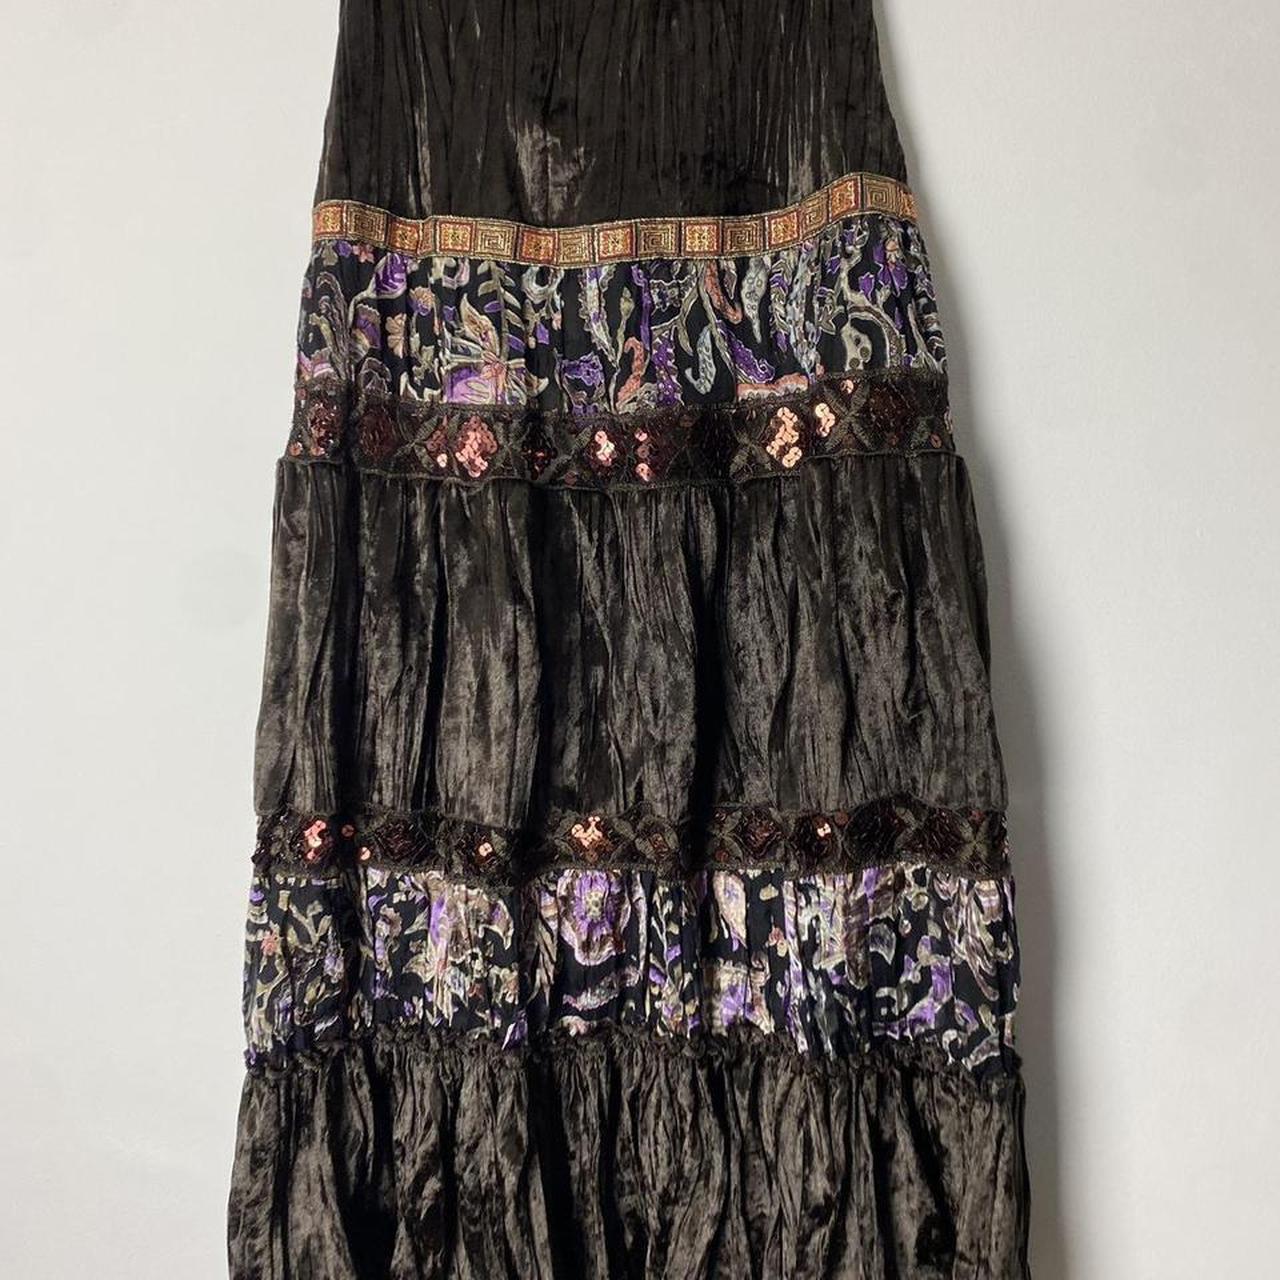 Vintage 1990s tiered floral devoré velvet boho skirt... - Depop